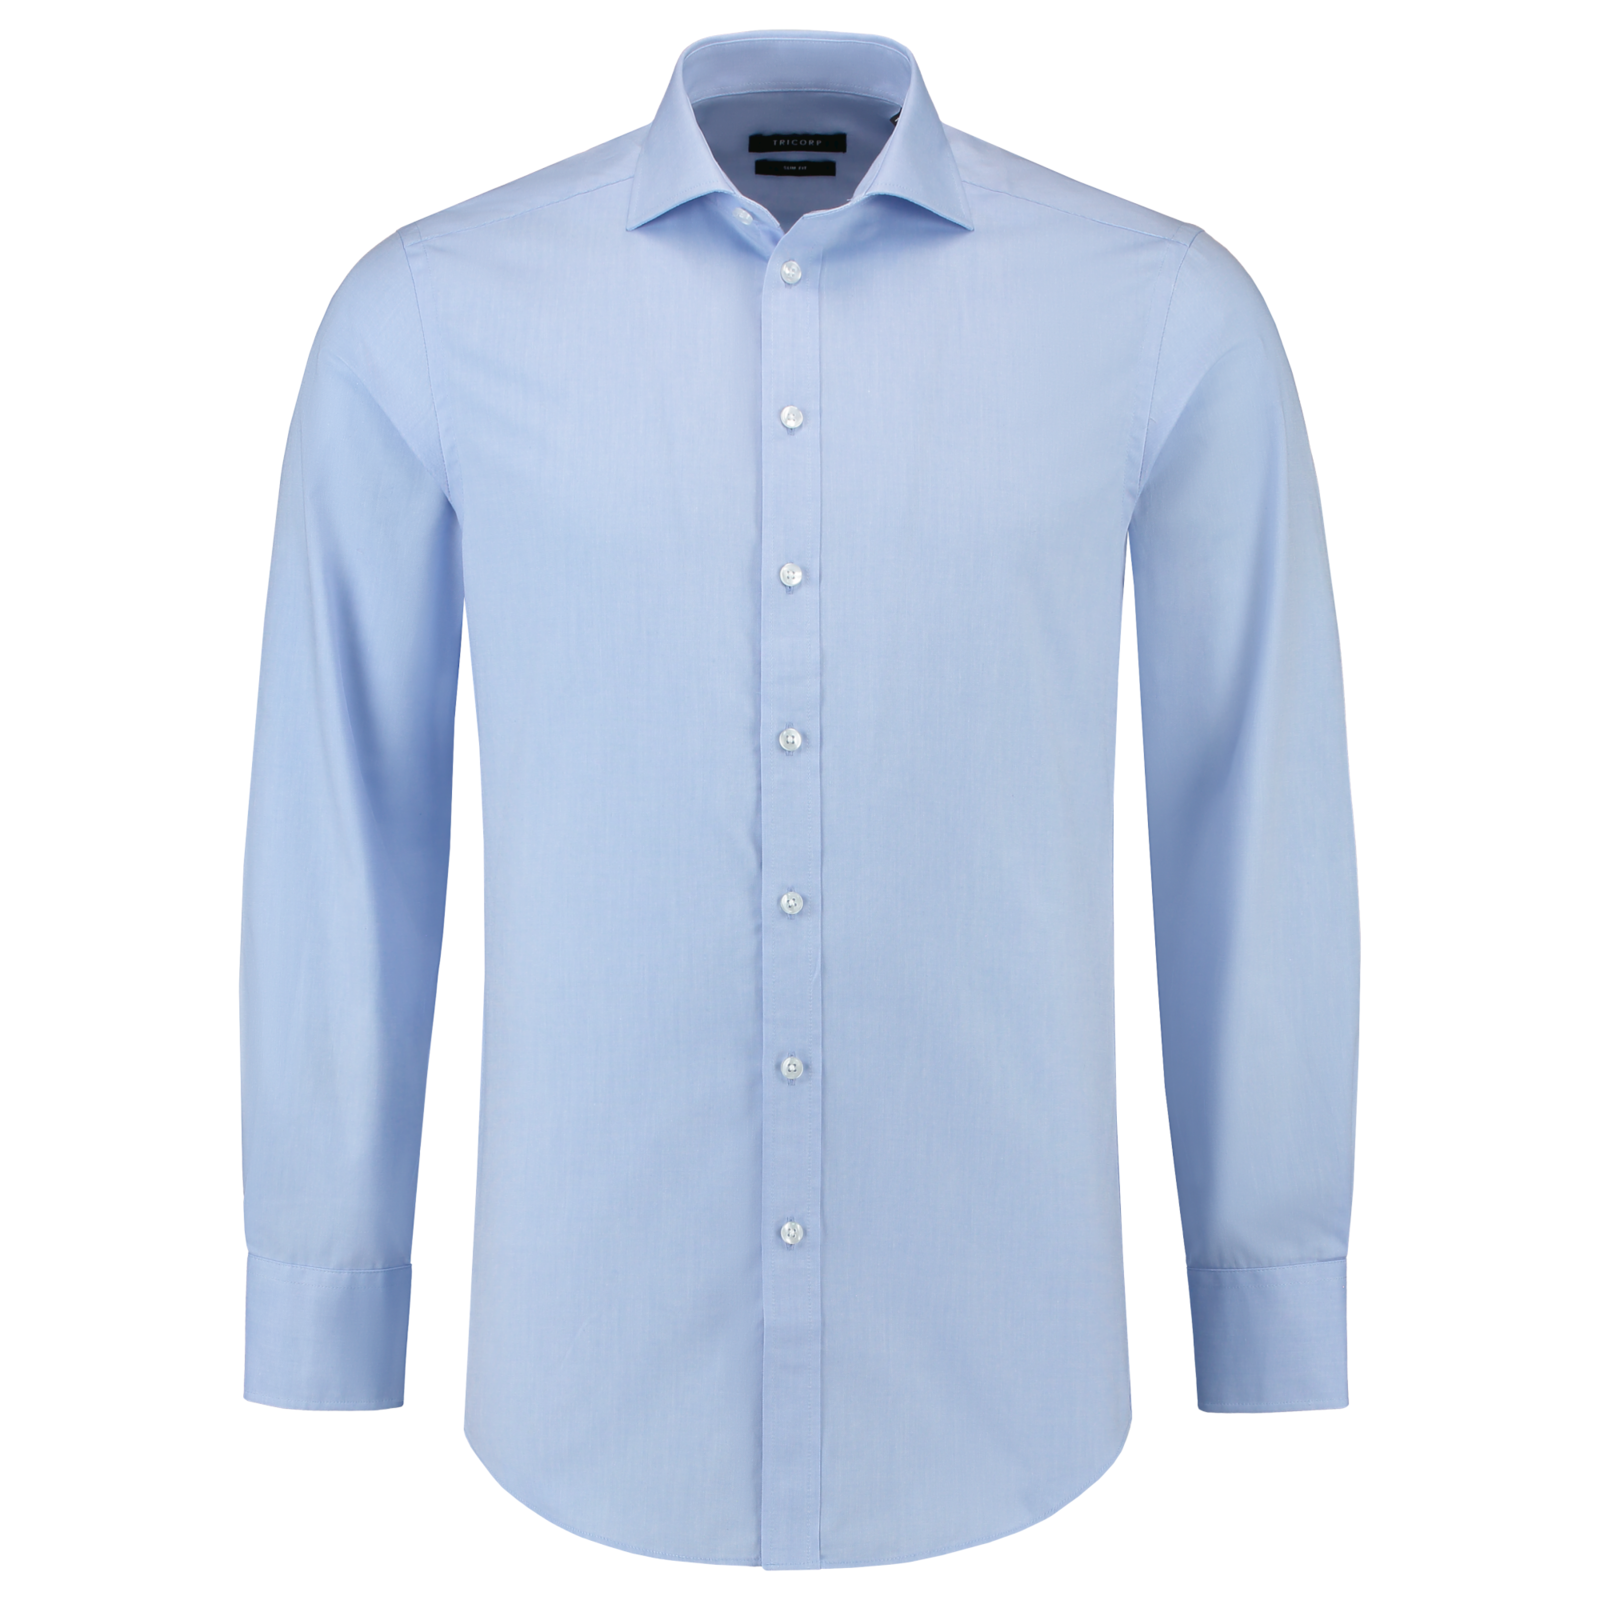 Pánska košeľa s dlhým rukávom Tricorp Fitted Stretch T23 - veľkosť: 41, farba: svetlo modrá